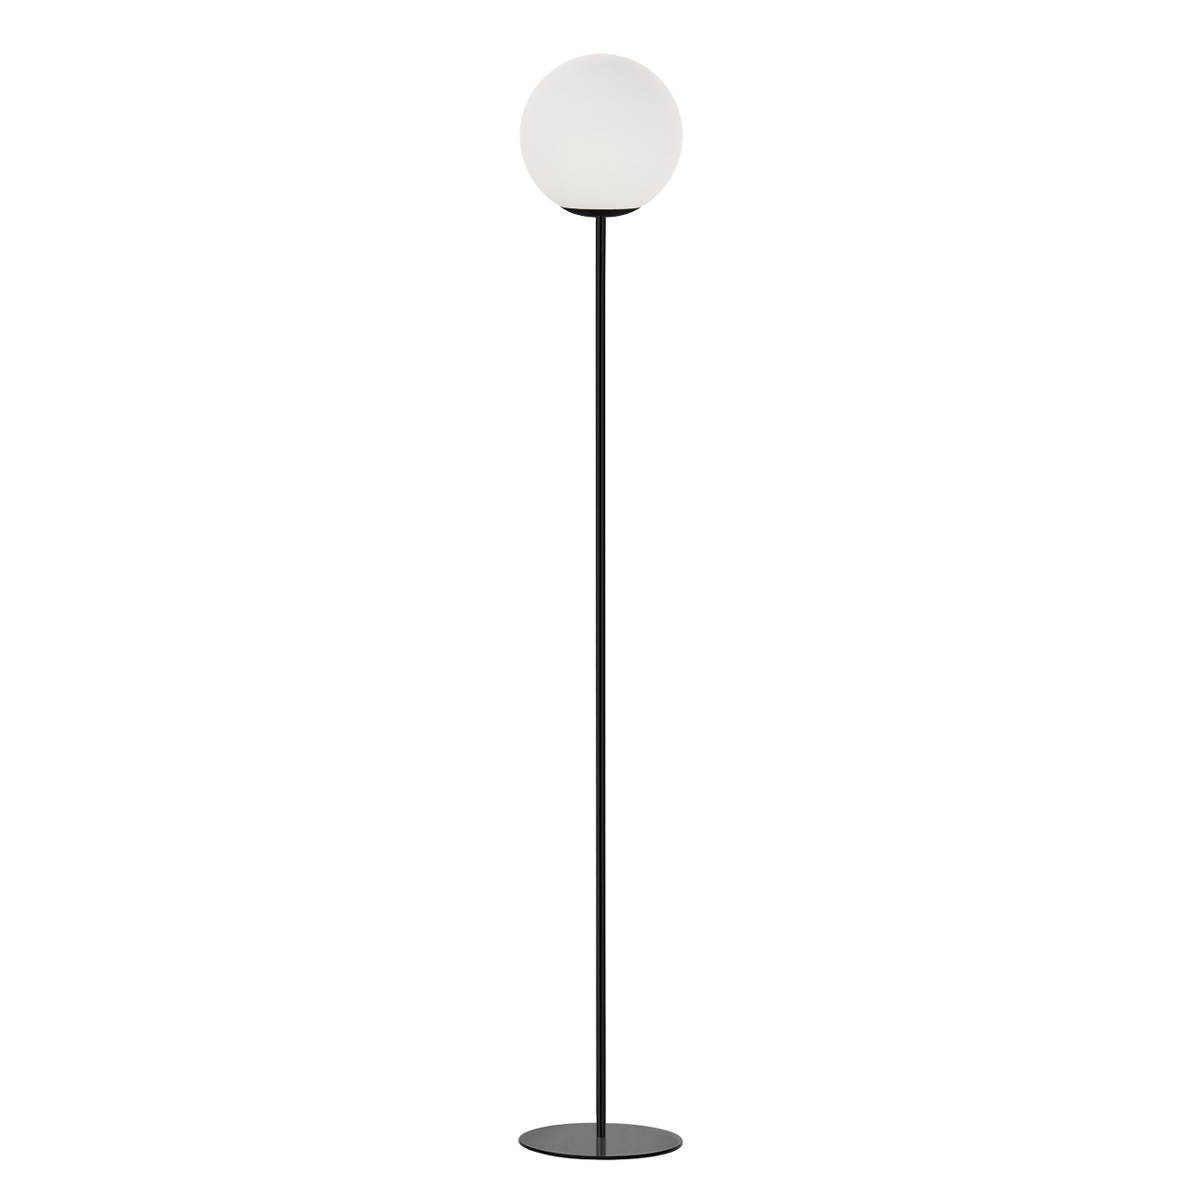 Μοντέρνο επιδαπέδιο φωτιστικό μπάλα ΜΠΑΛΕΣ modern floor lamp with glass ball